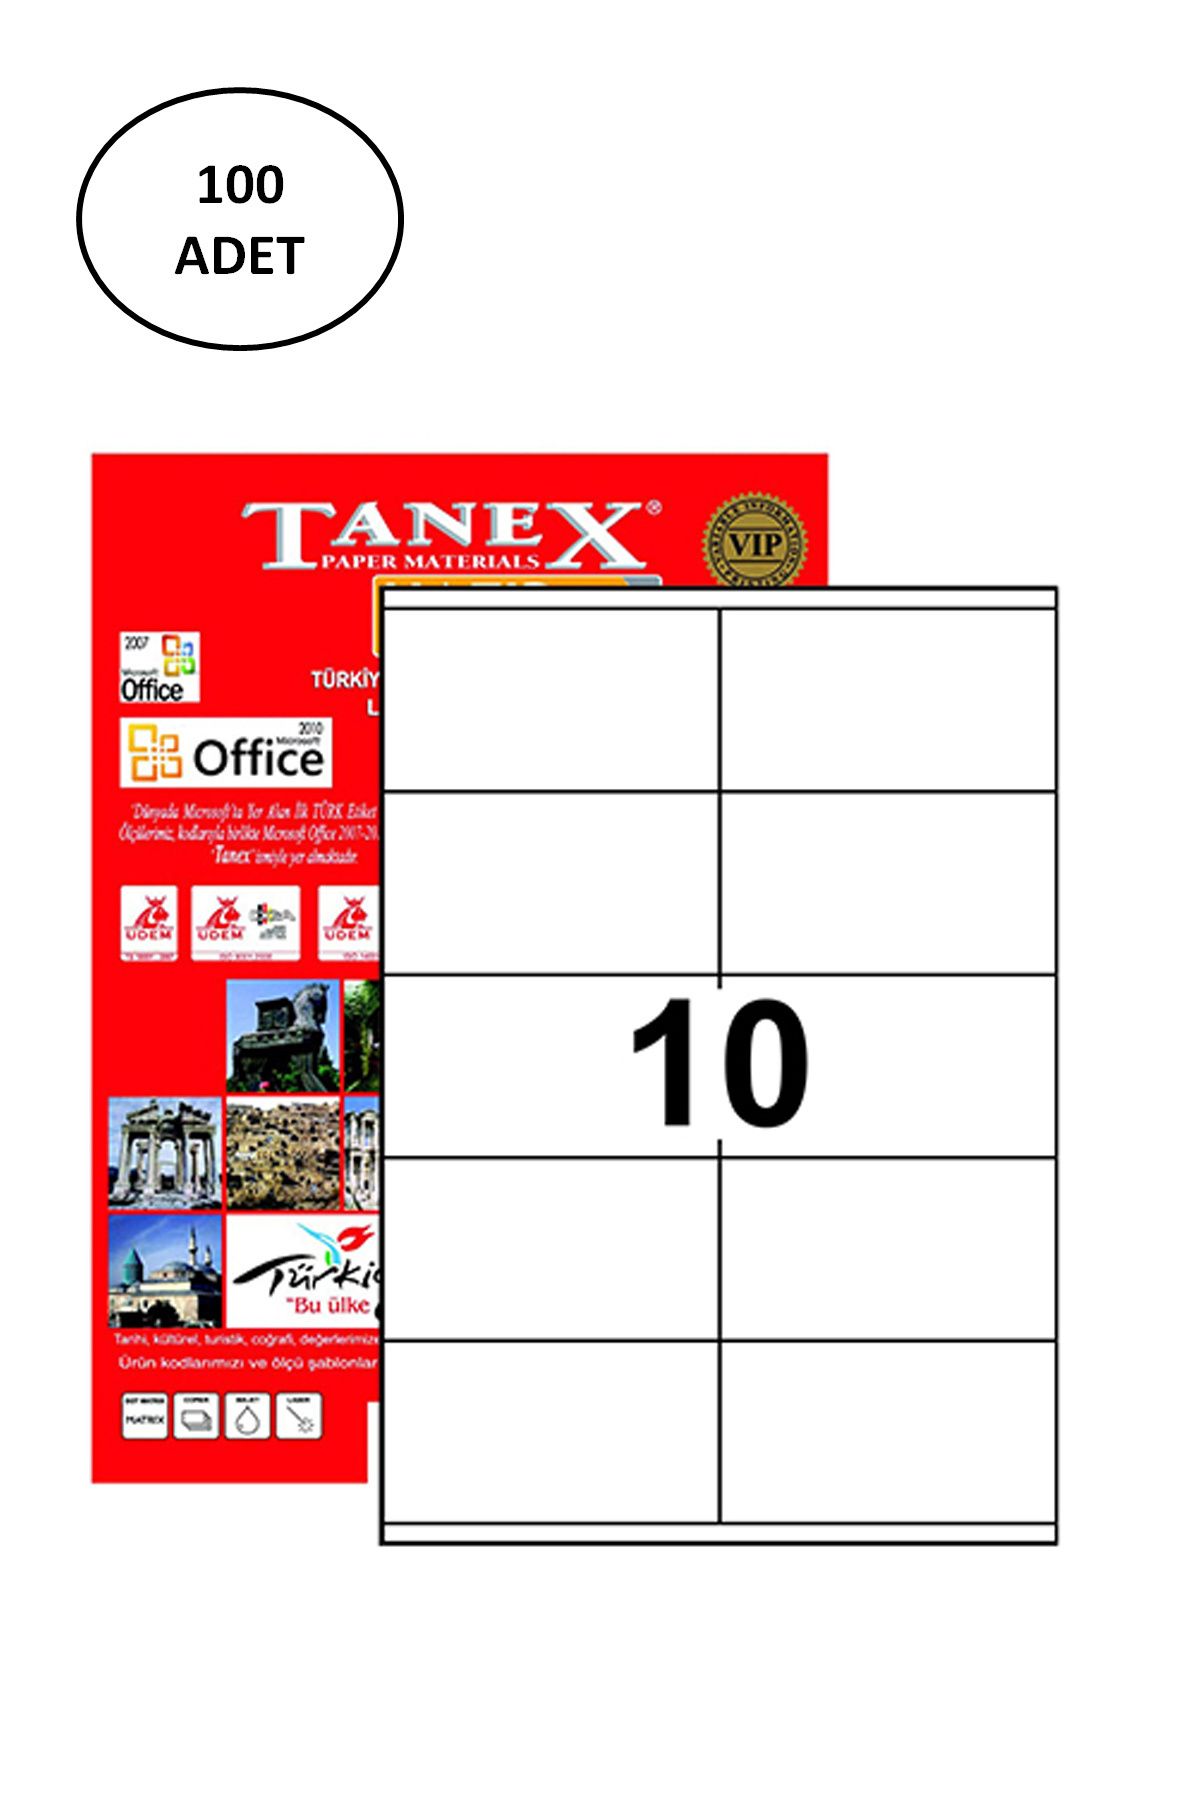 TREND Tanex TW-2610 105x57 mm 100 Adet Laser Etiket